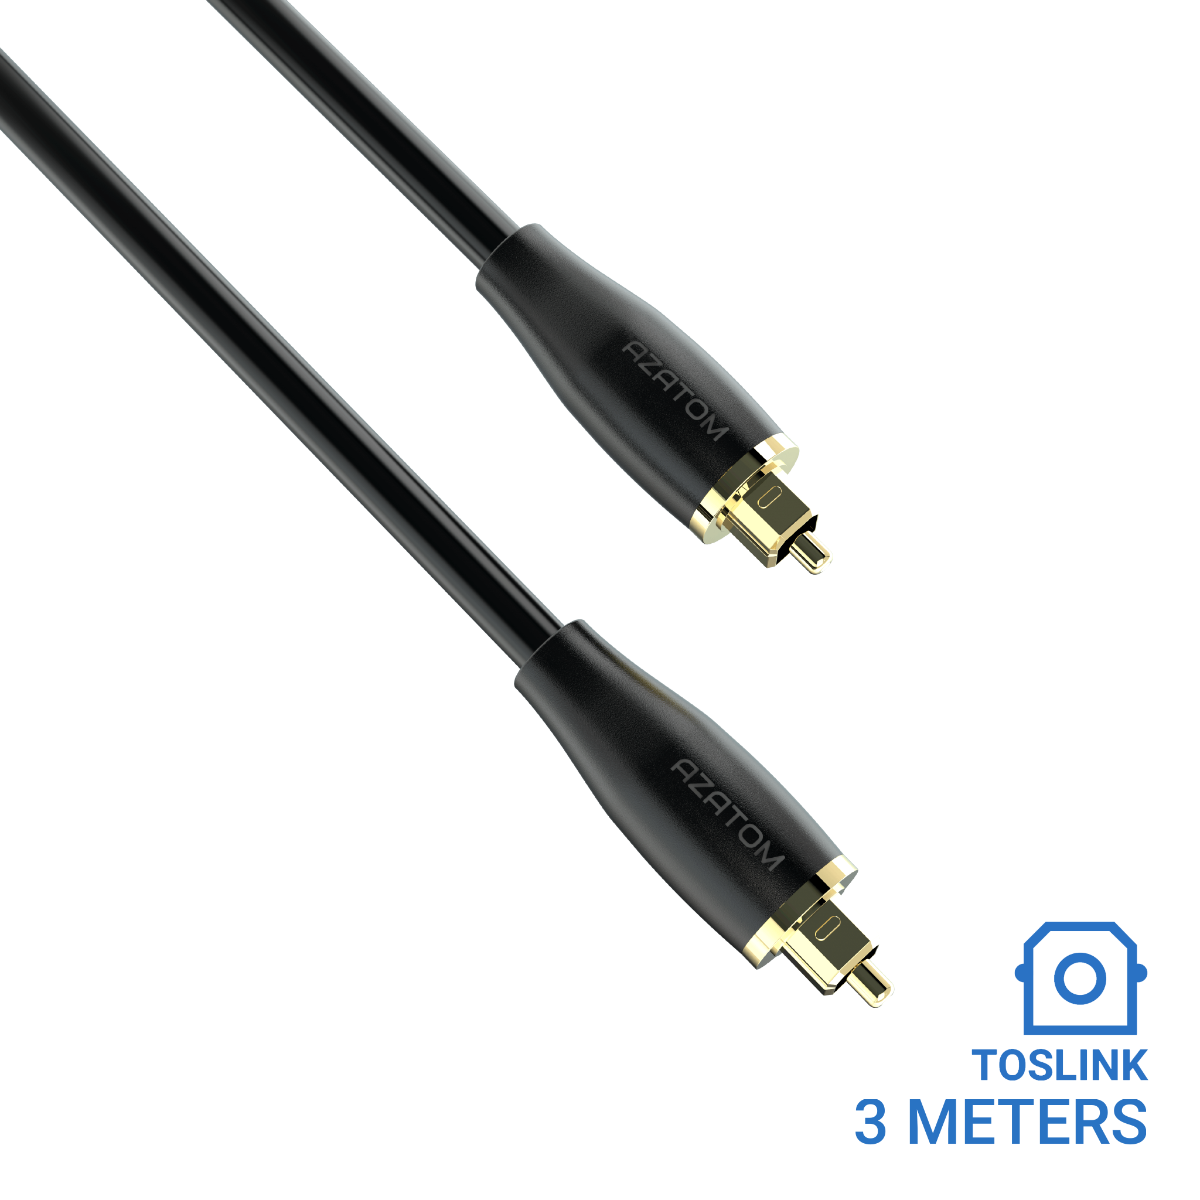 3 Metros Cable Óptico Toslink sonido envolvente - Tecnopura